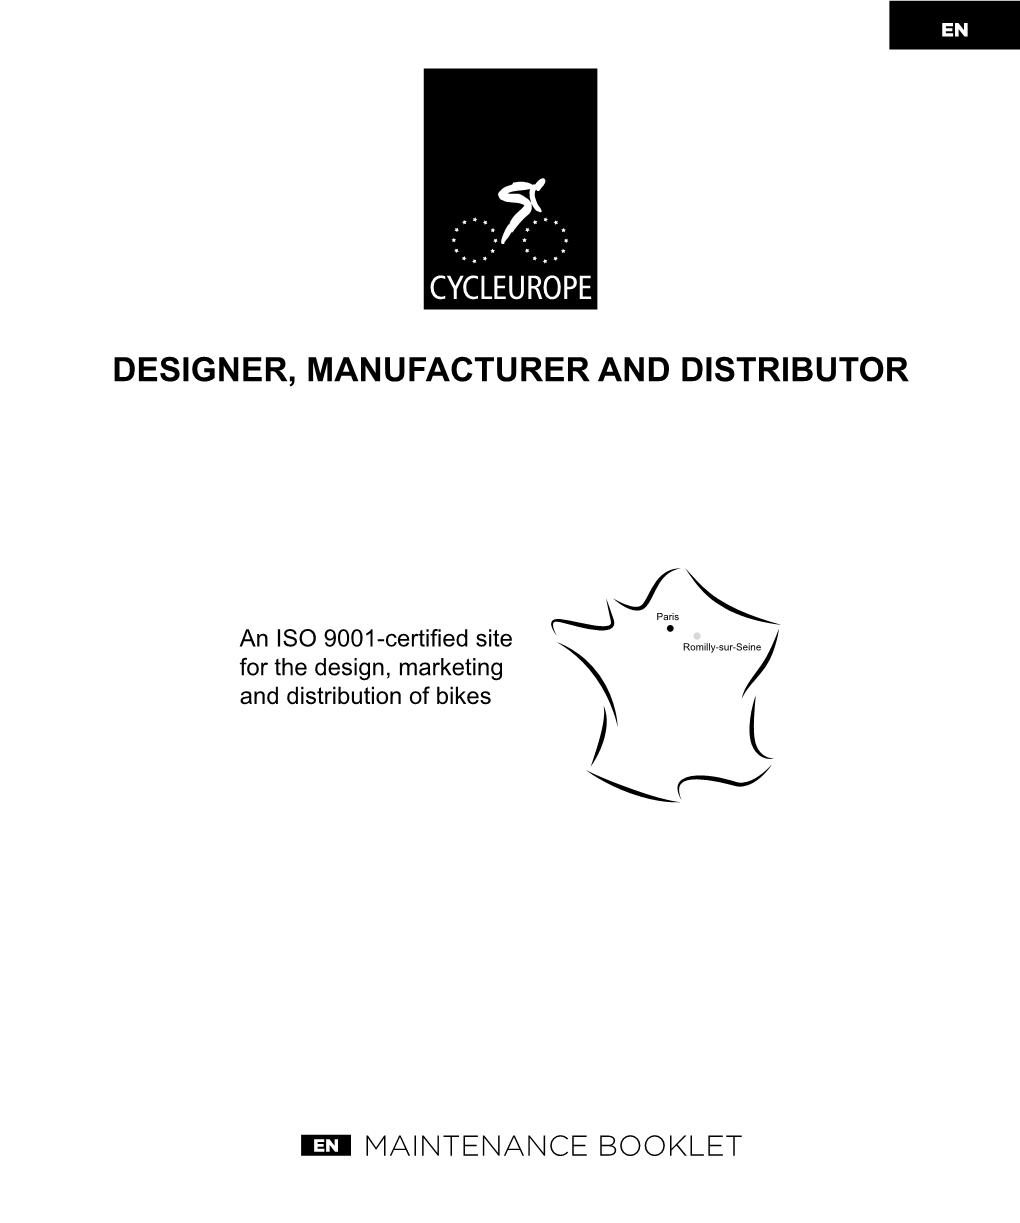 Designer, Manufacturer and Distributor